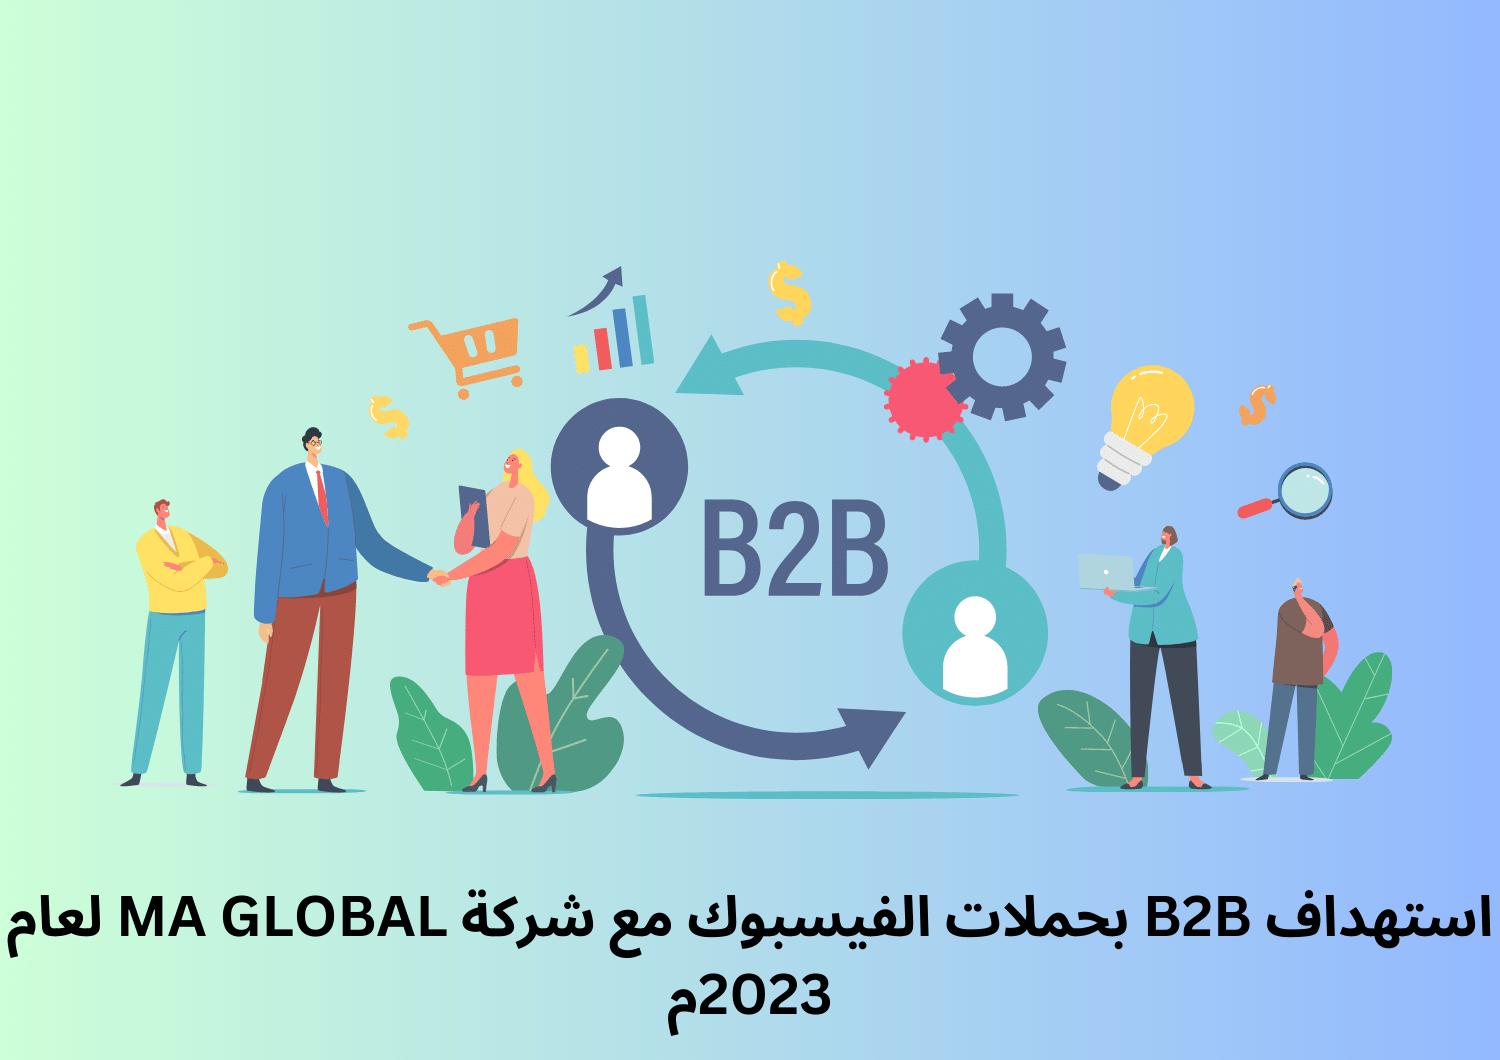 استهداف B2B بحملات الفيسبوك مع شركة MA GLOBAL لعام 2023م